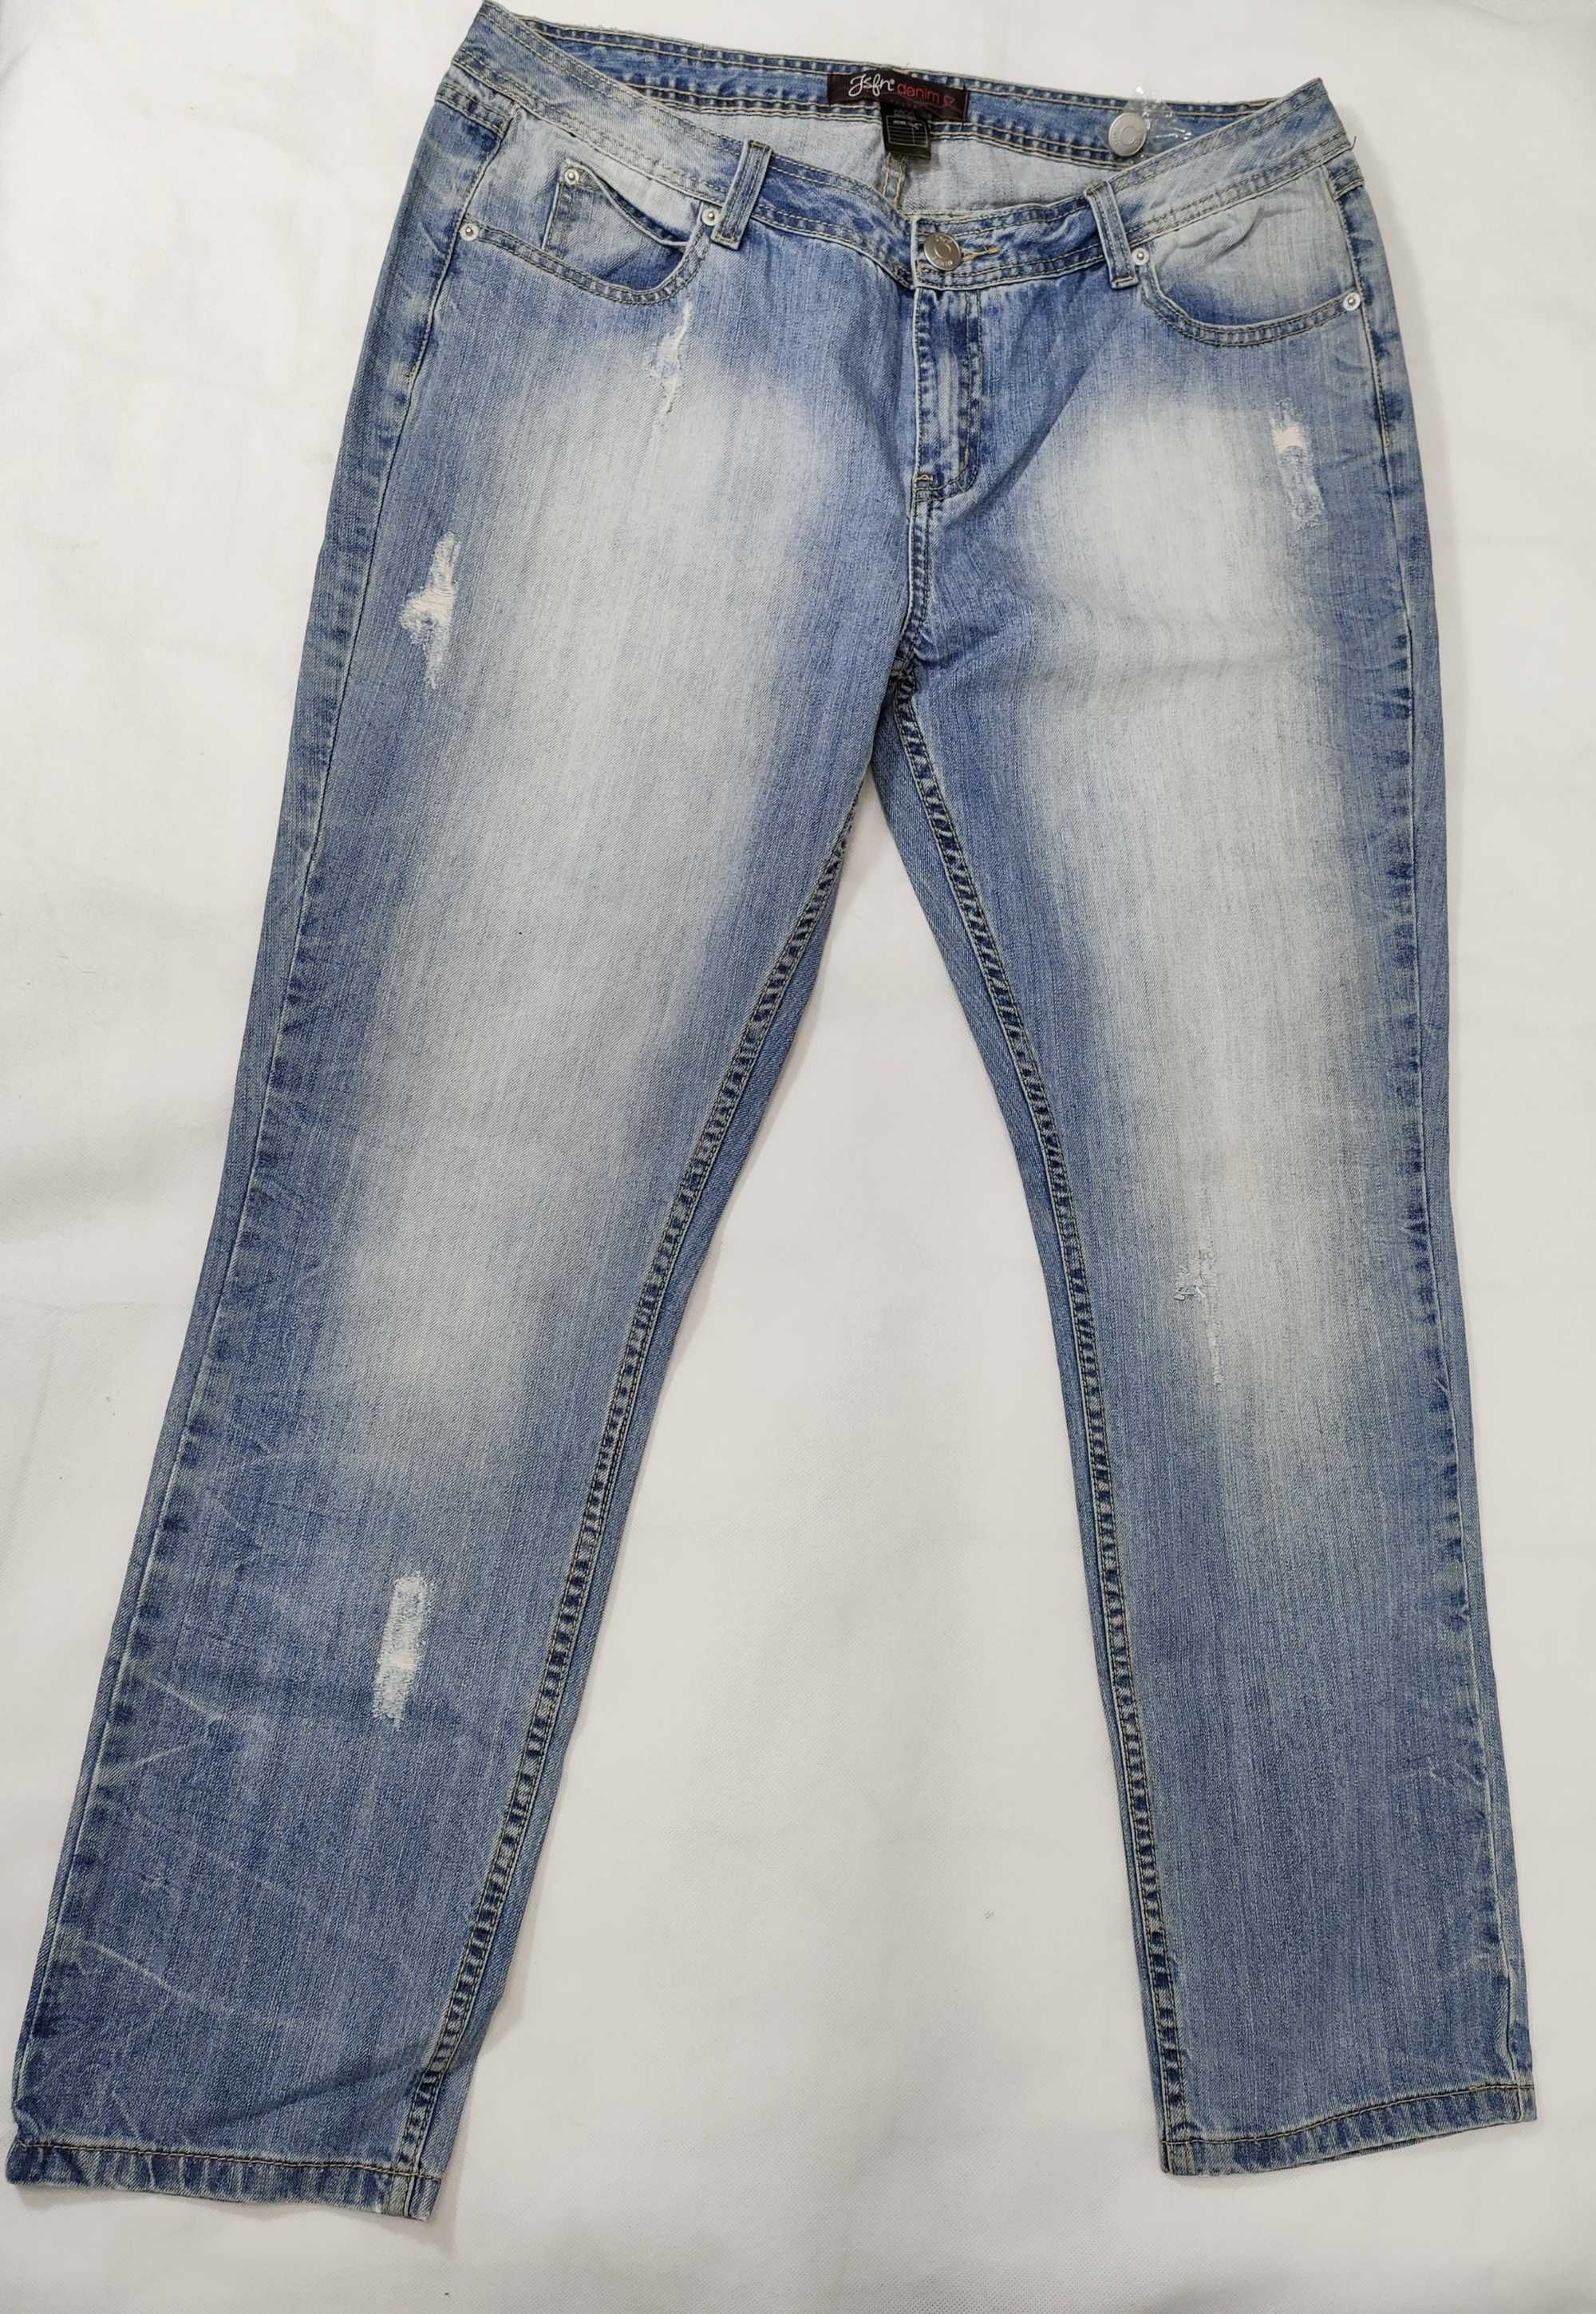 Spodnie damskie jeansowe mom 46 dżinsowe 34/32 przetarte SP0143 ELLOS